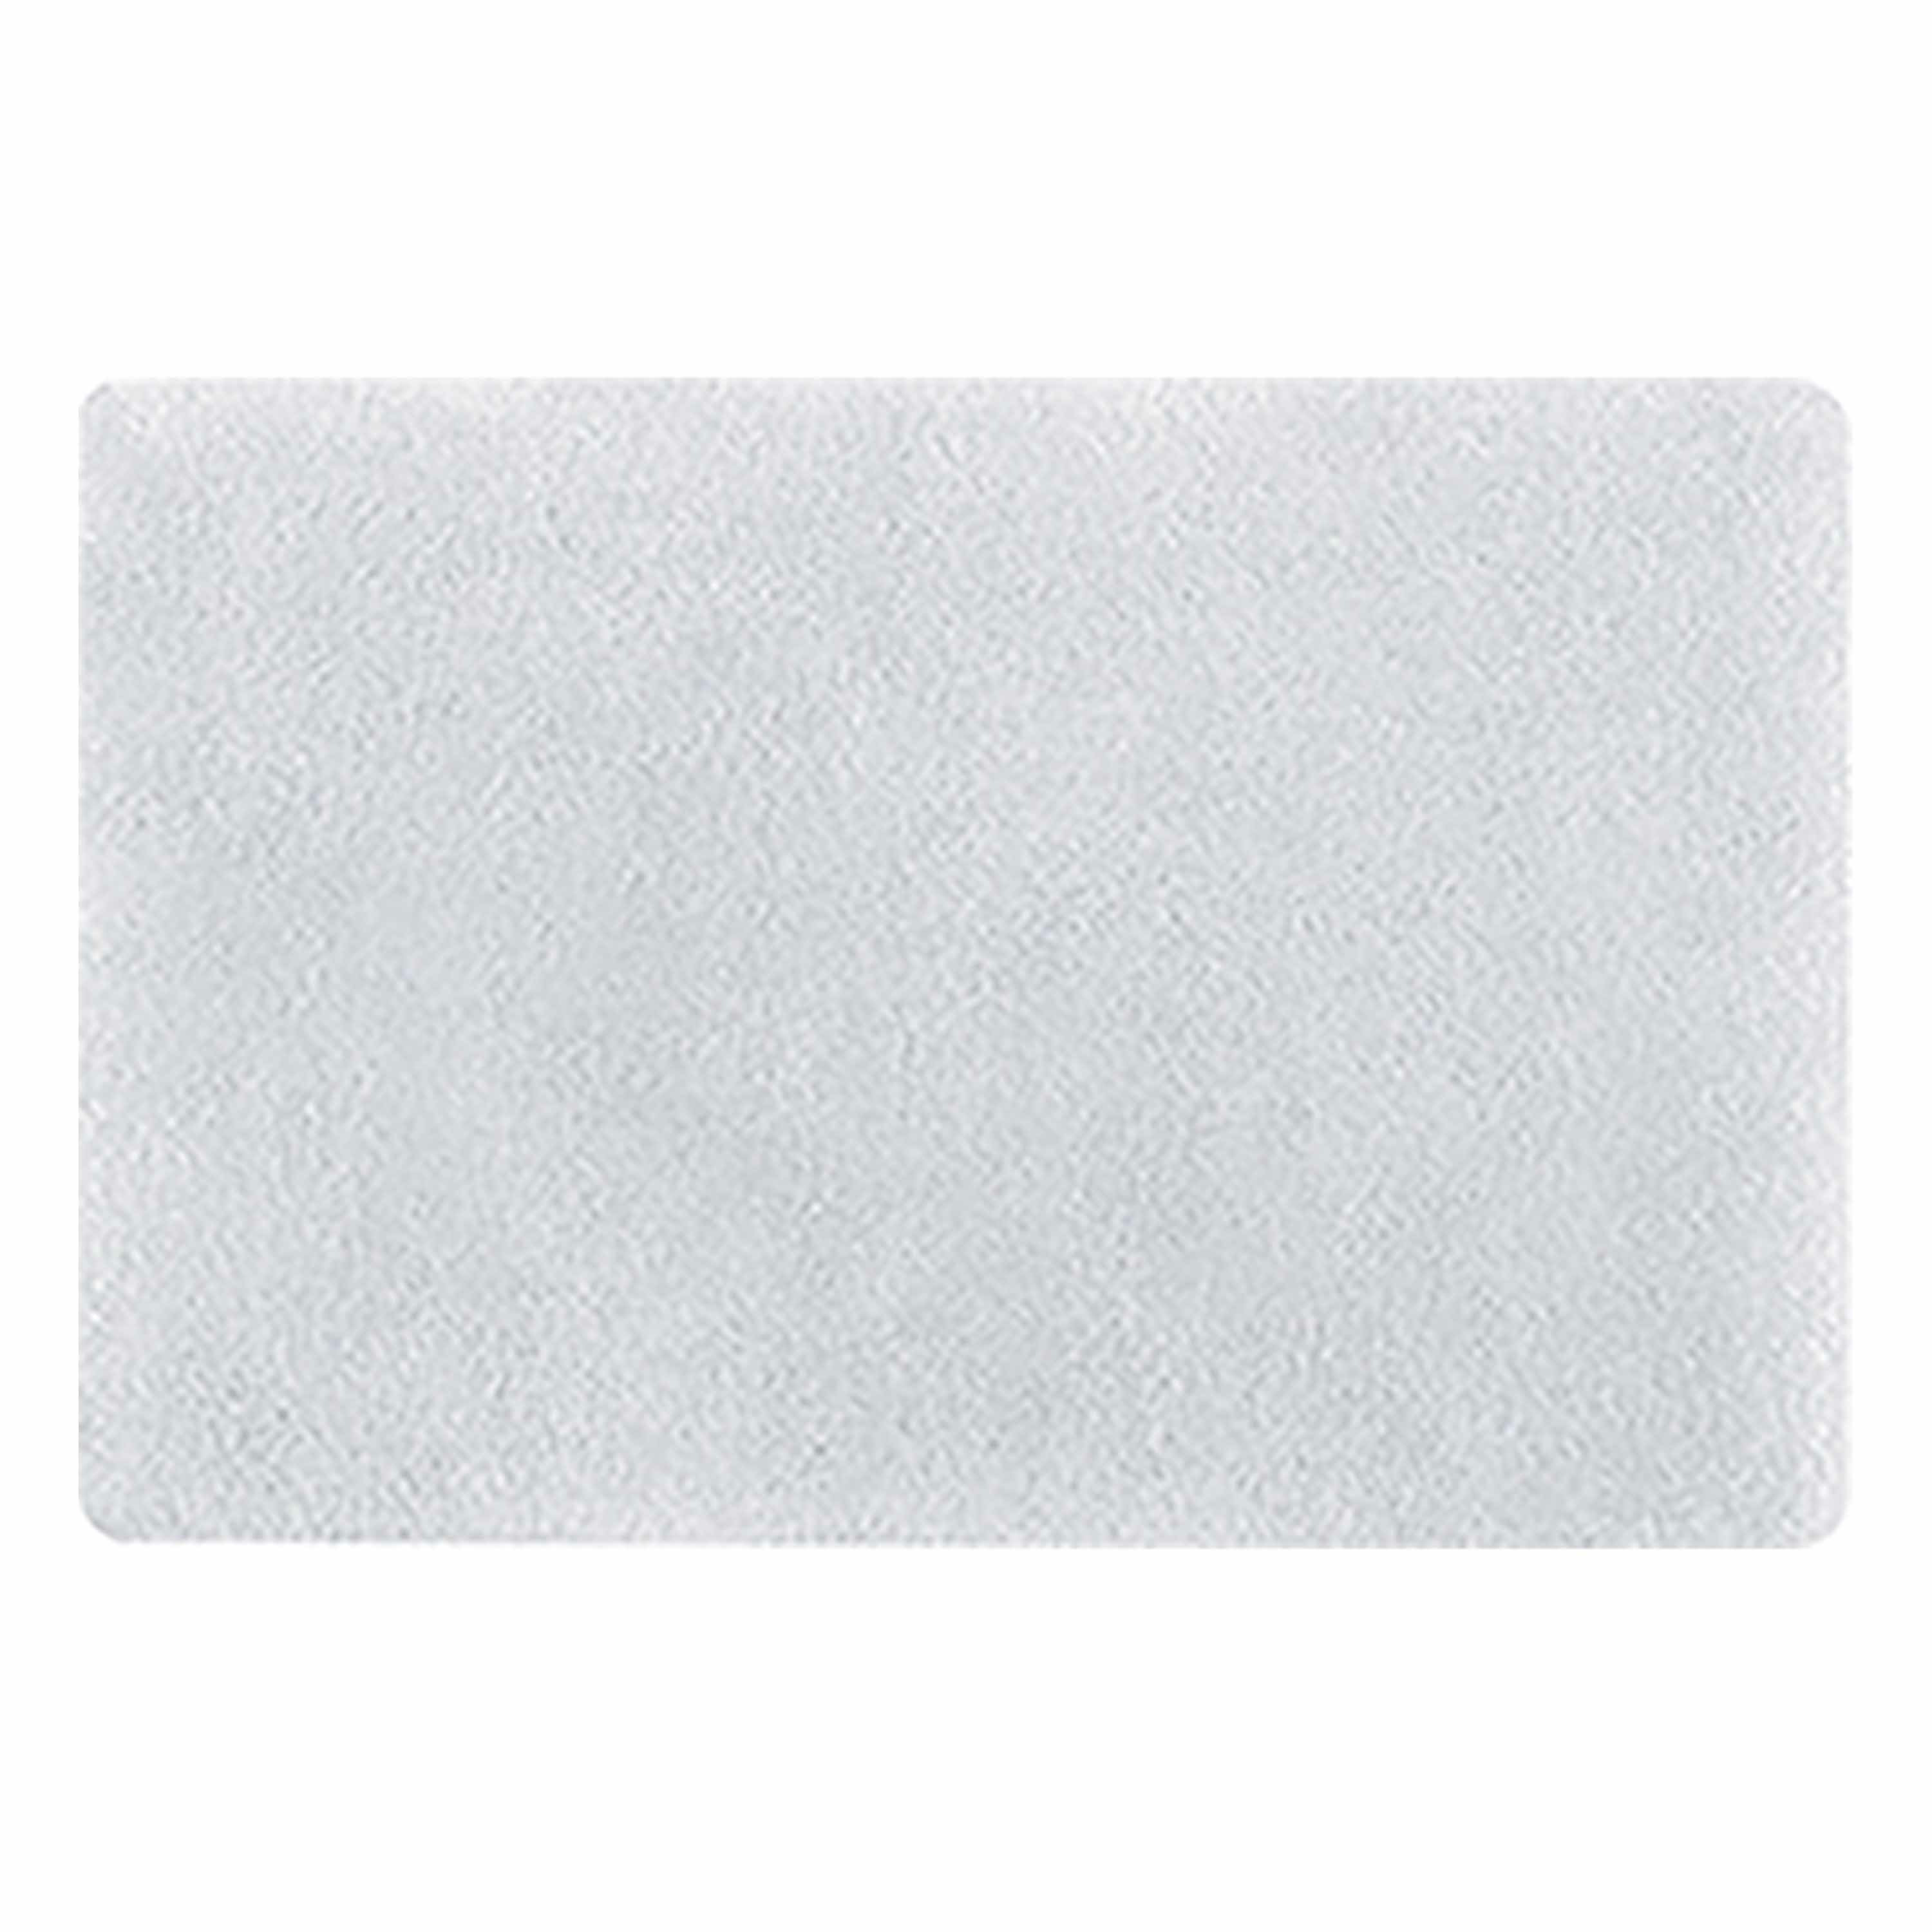 Spirella badkamer vloer kleedje-badmat tapijt hoogpolig en luxe uitvoering wit 50 x 80 cm